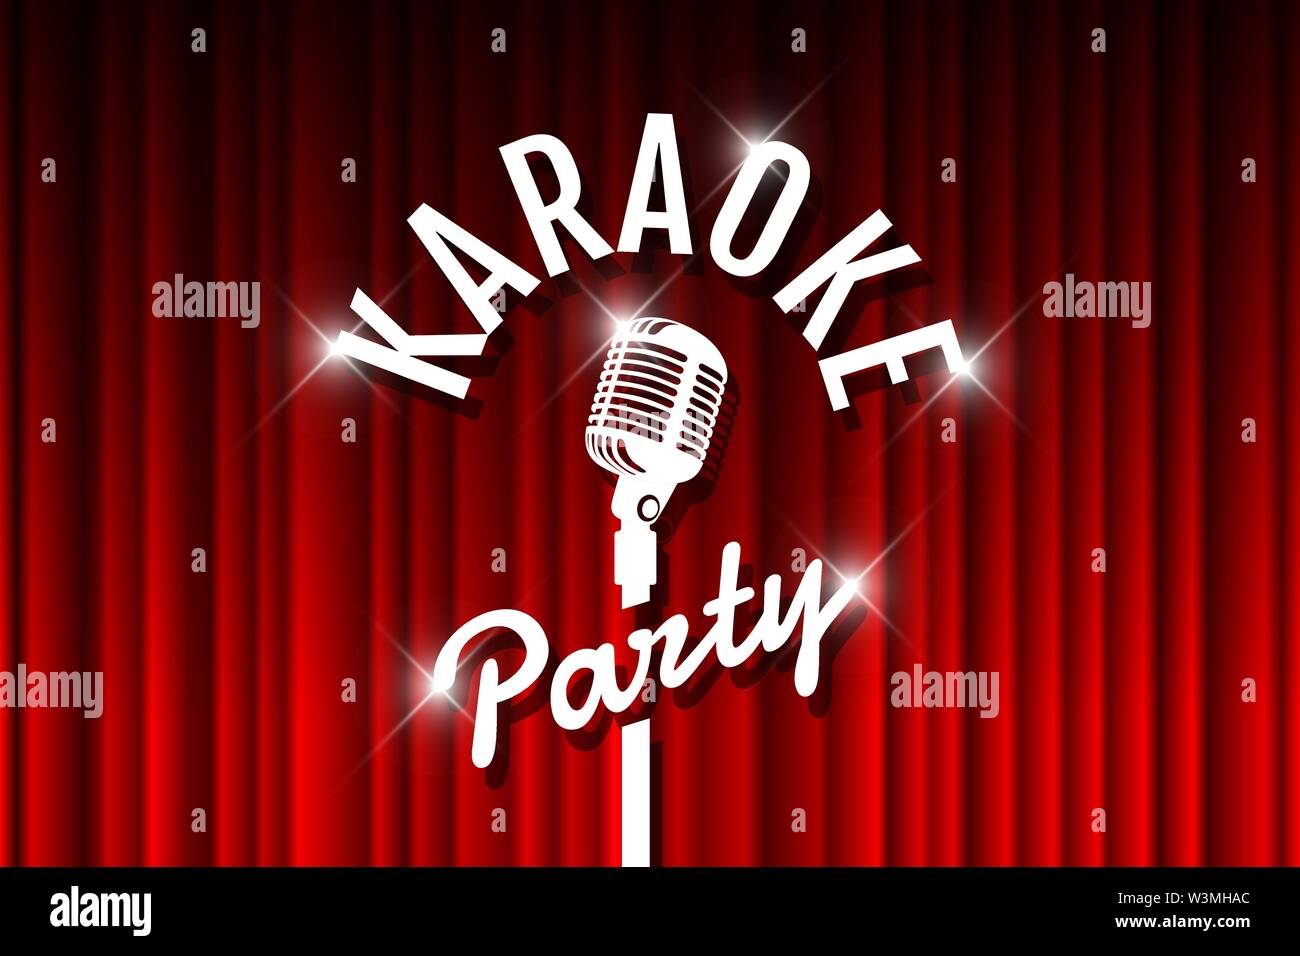 Karaoke-Party-Nacht Live-Show mit offenem Mikrofon auf einer leeren Theaterbühne. Vintage-Mikrofon vor rotem Vorhang drapieren Hintergrund. Retro Vektor Kunst Bühne Bild Illustration Stock Vektor